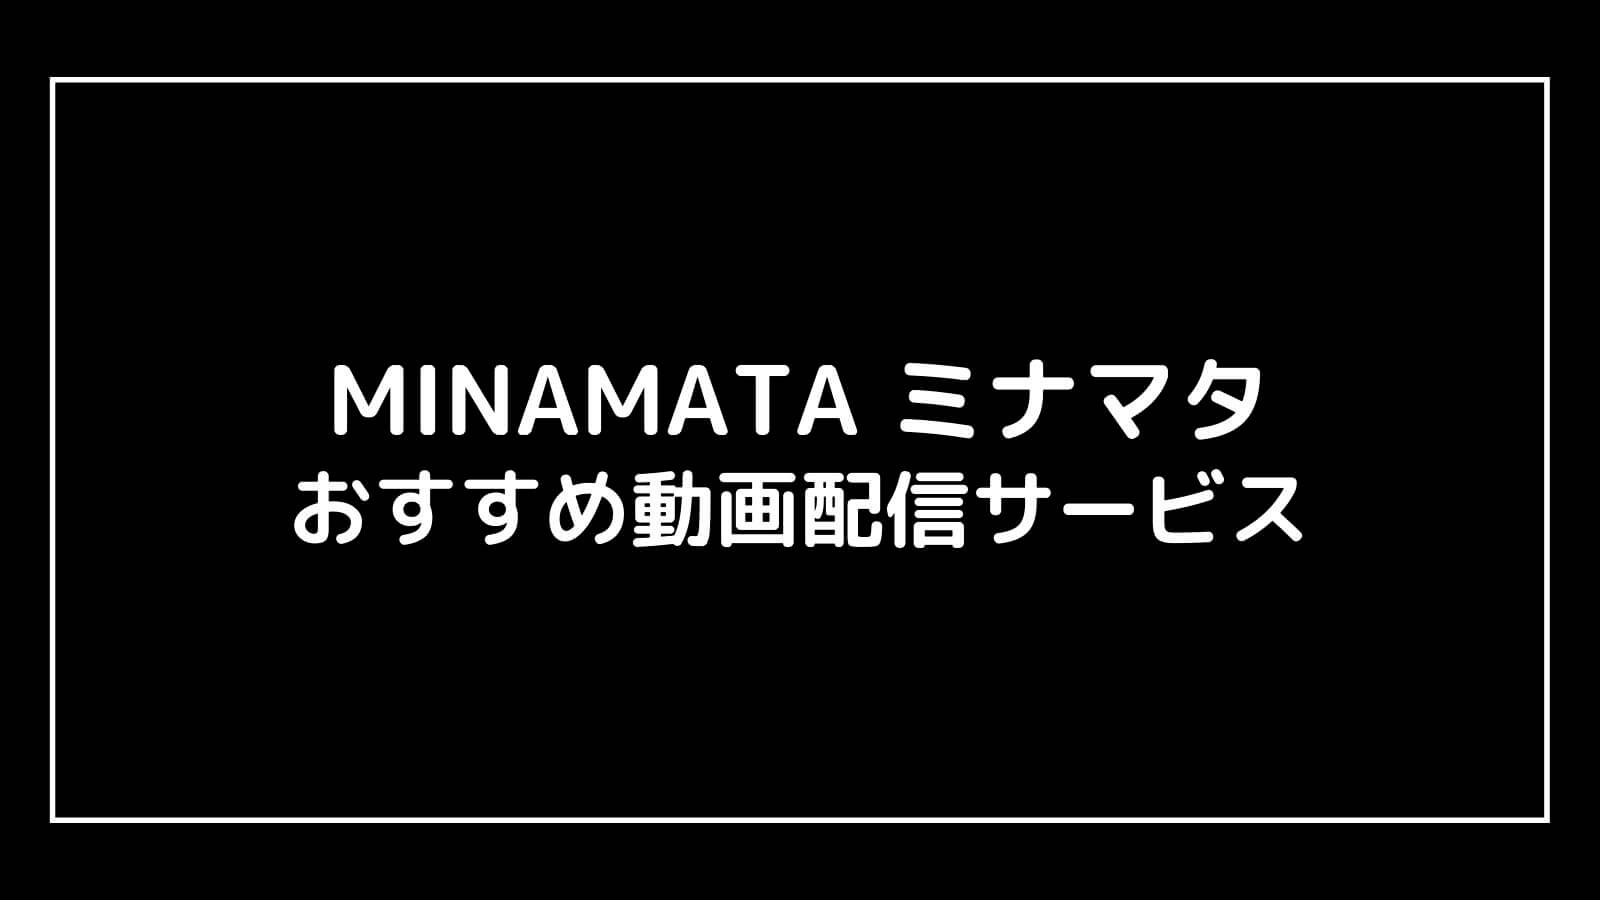 映画『MINAMATA ミナマタ』を無料視聴できるおすすめ動画配信サービス